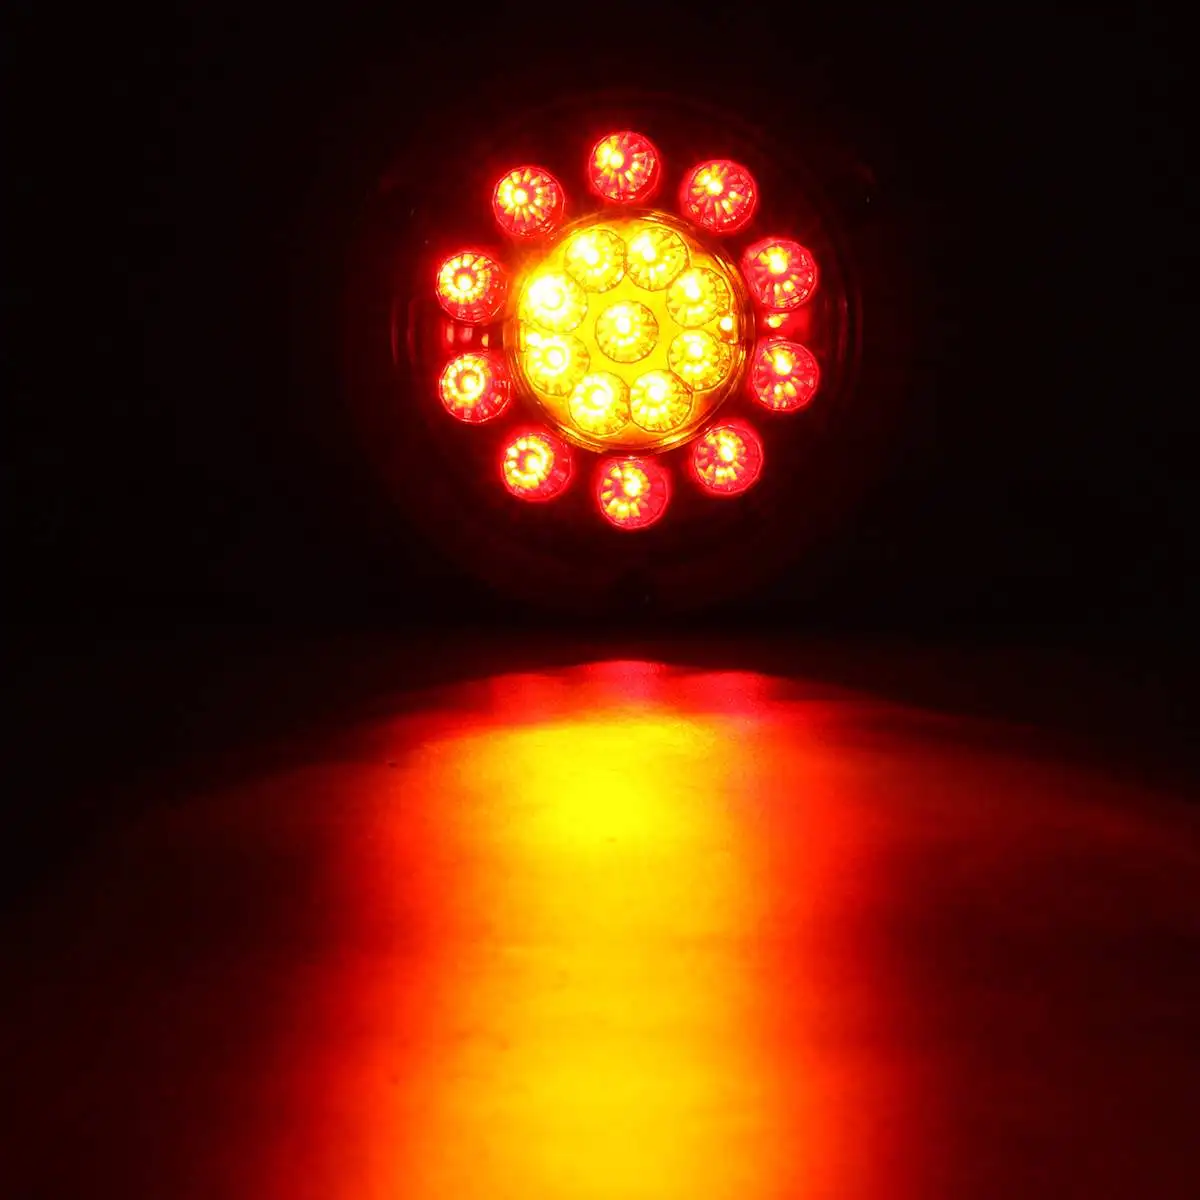 Комплект из 2 предметов, 19 светодиодный футболка с принтом "автомобиль" светодиодный задний светильник s стоп-сигнал светильник для грузового прицепа транспортных средств 12V 24V боковая лампа